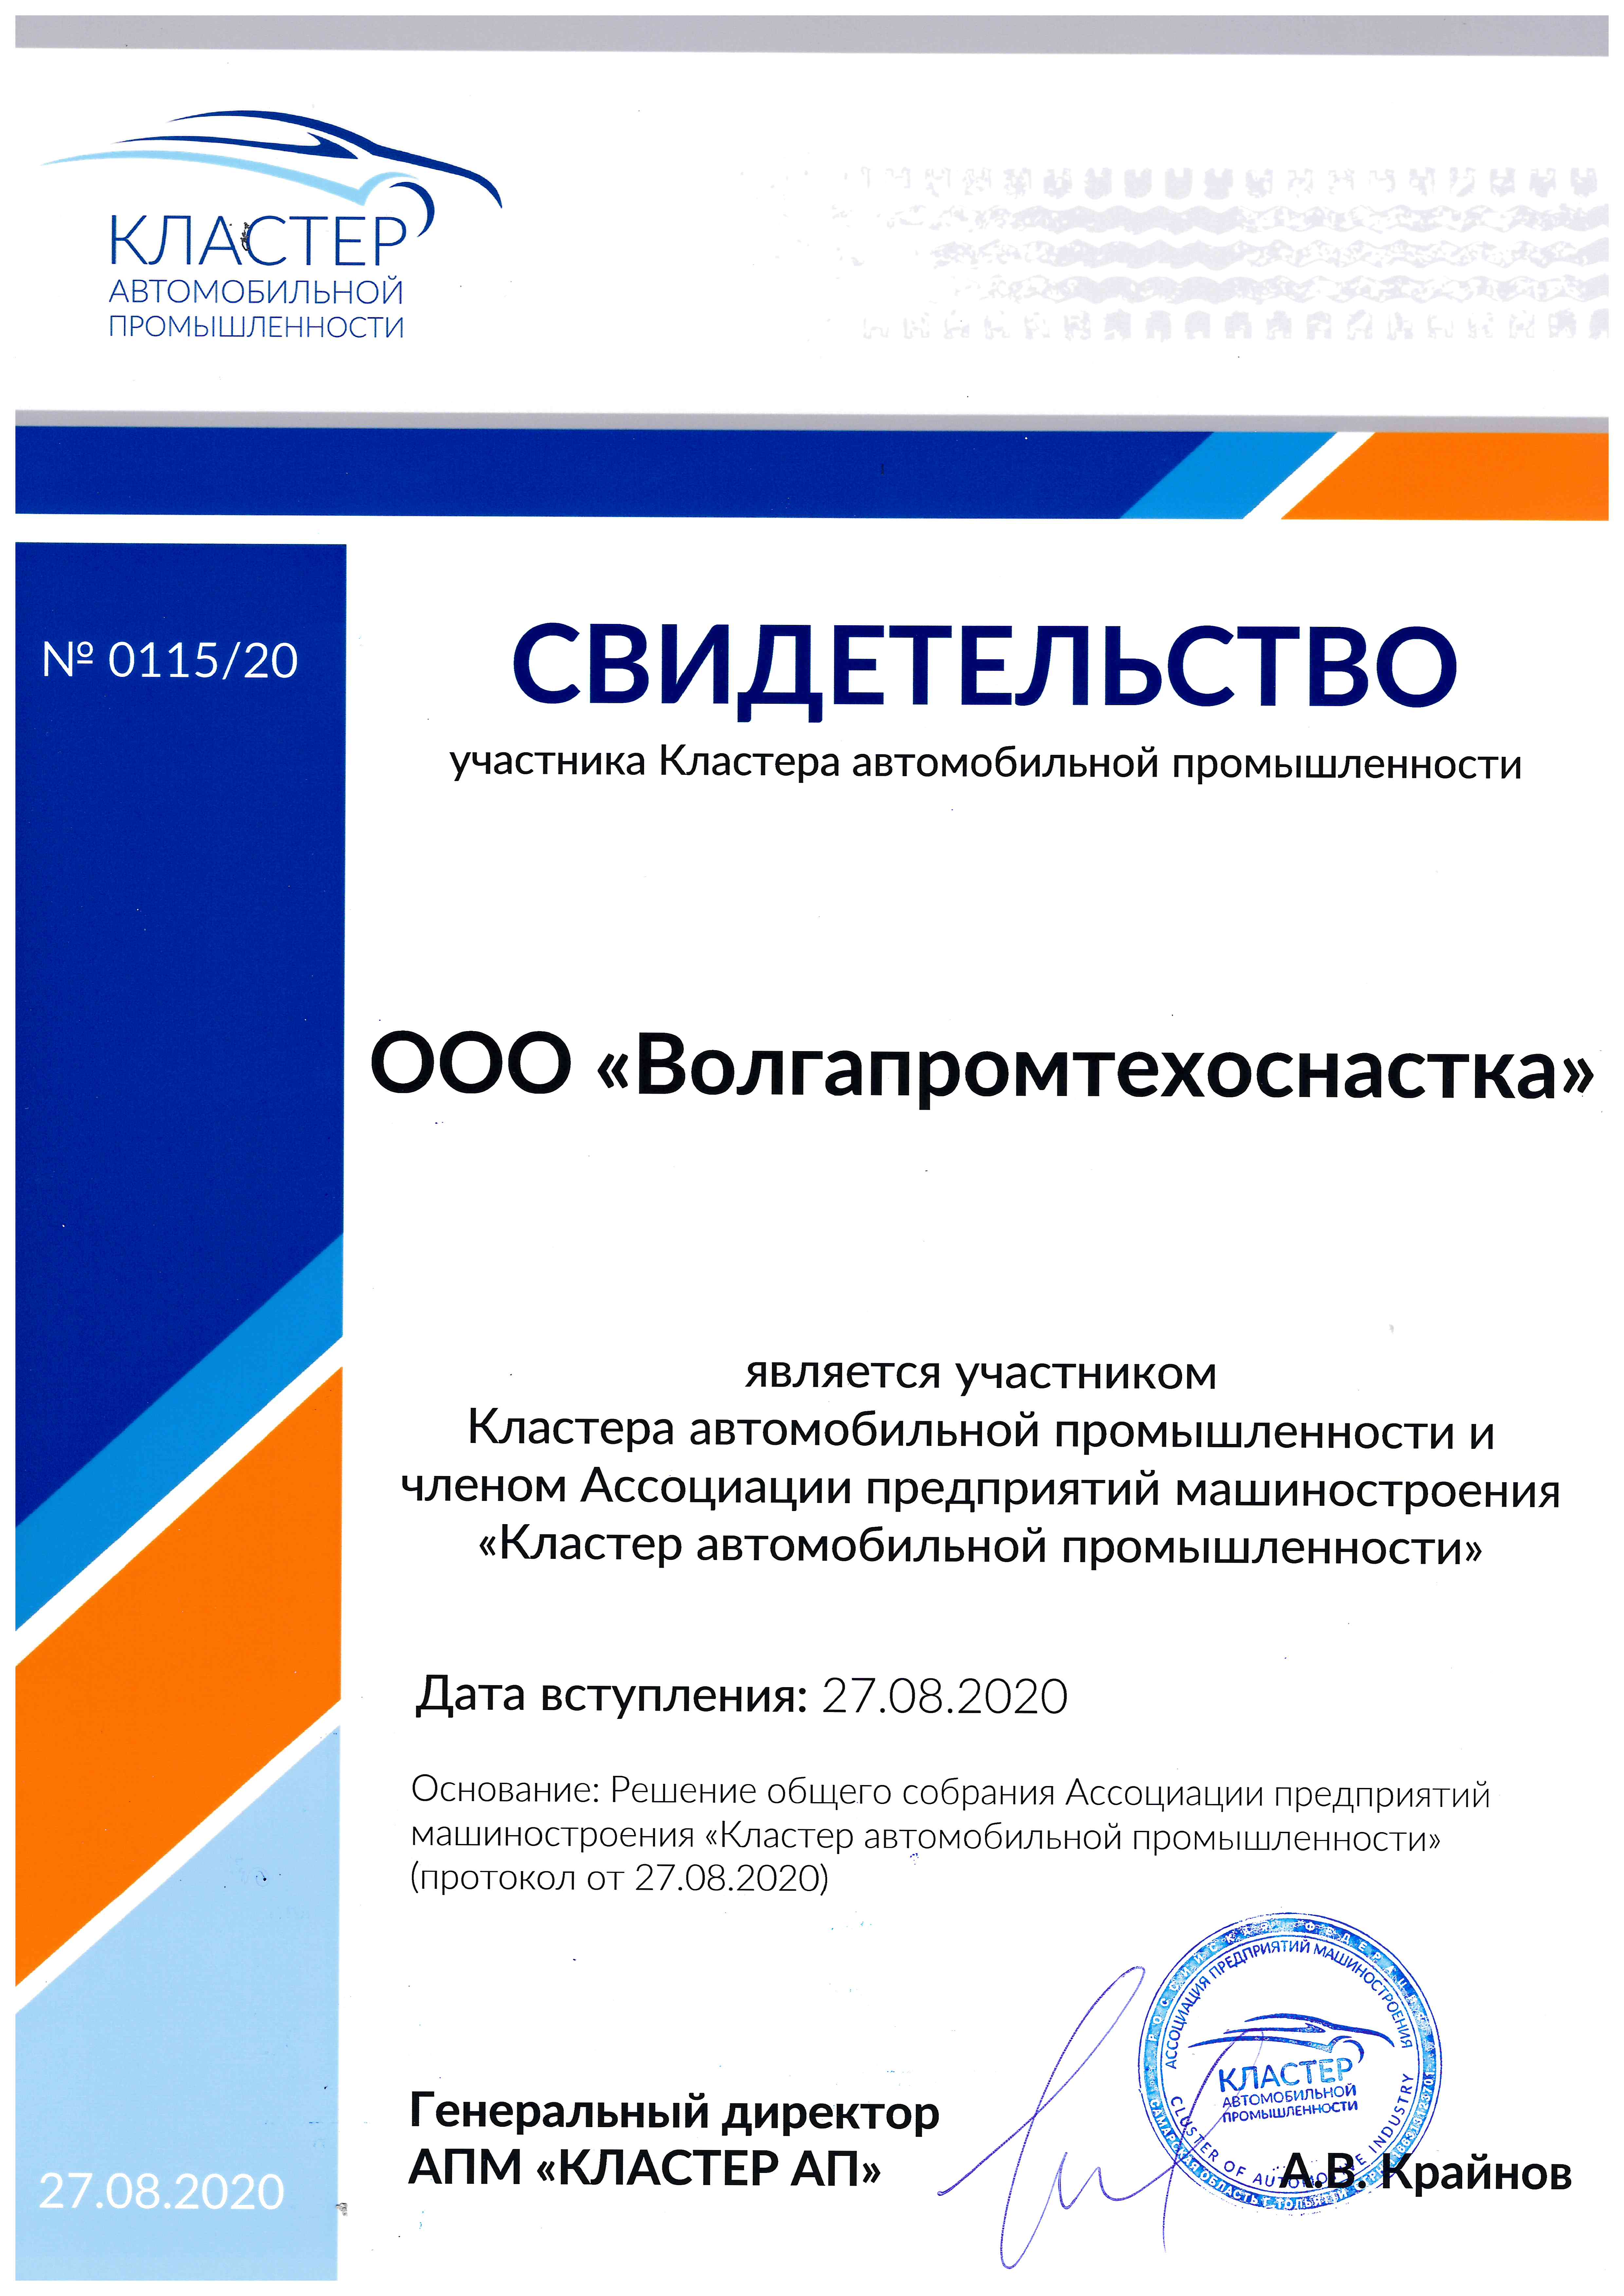 Компания ООО "Волгапромтехоснастка" стала членом межрегионального «Кластера автомобильной промышленности»!